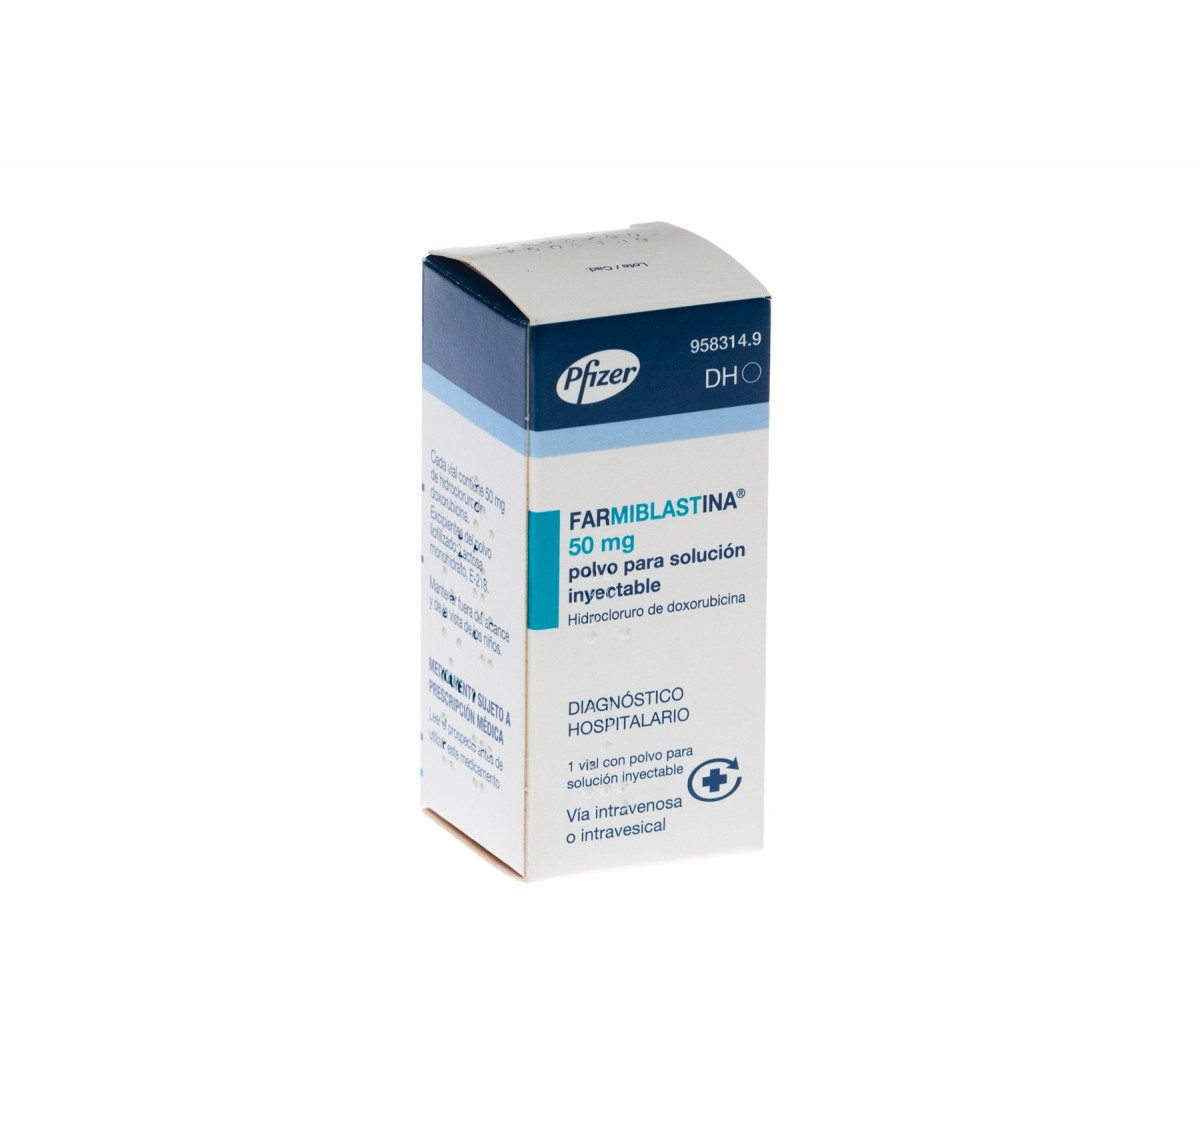 FARMIBLASTINA 50 mg POLVO PARA SOLUCION INYECTABLE, 25 viales fotografía del envase.